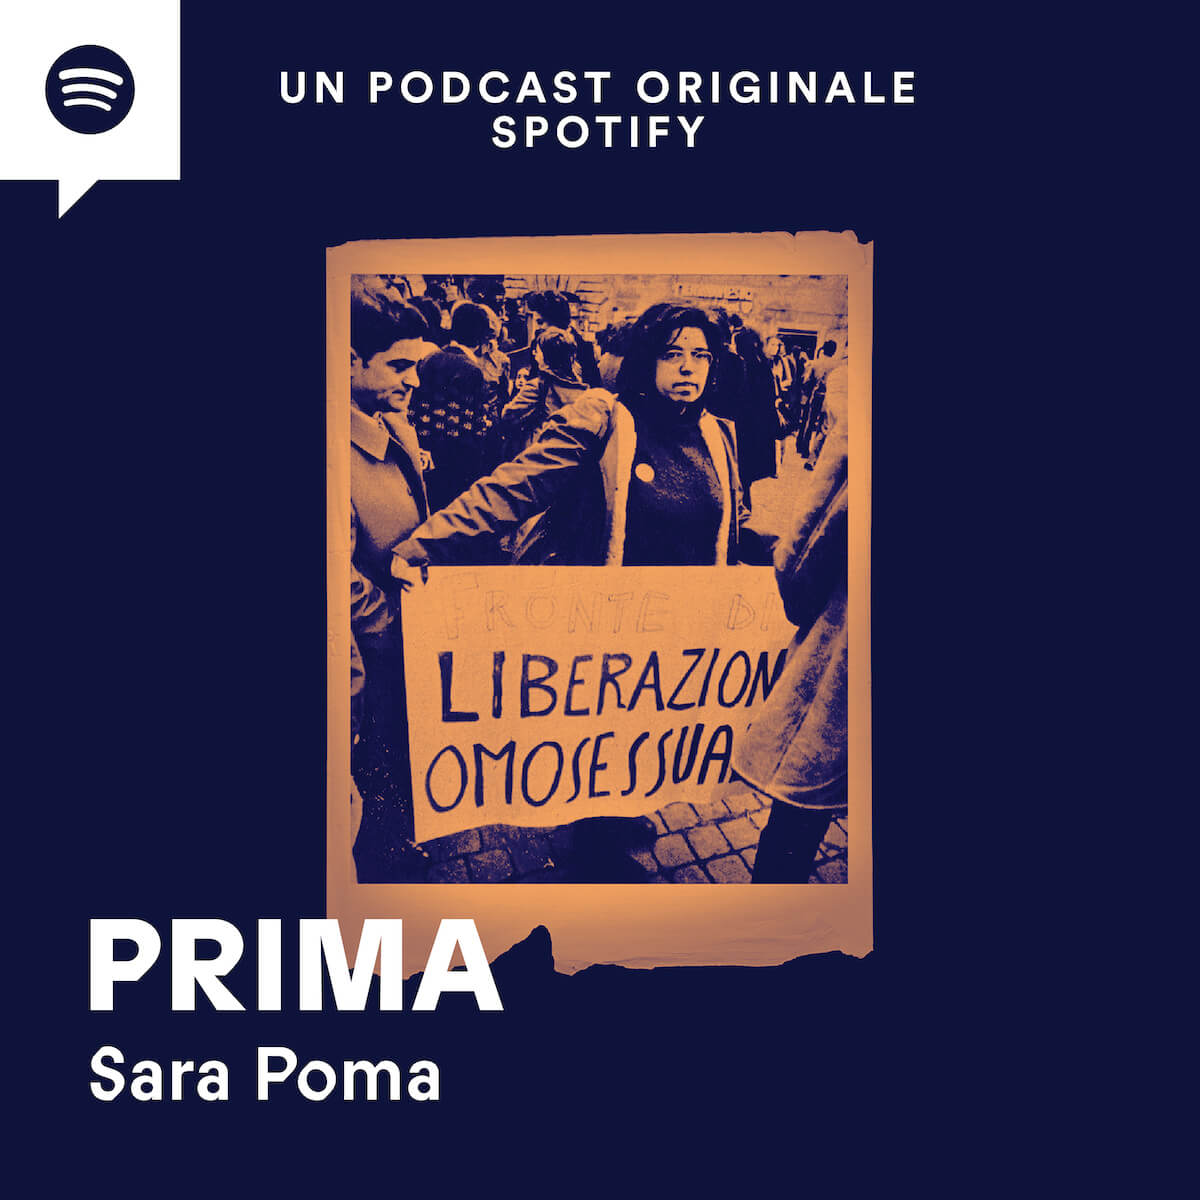 Prima, il podcast che racconta la storia di Mariasilvia Spolato, prima donna in Italia ad aver fatto coming out - Prima il podcast che racconta la storia di Mariasilvia Spolato - Gay.it